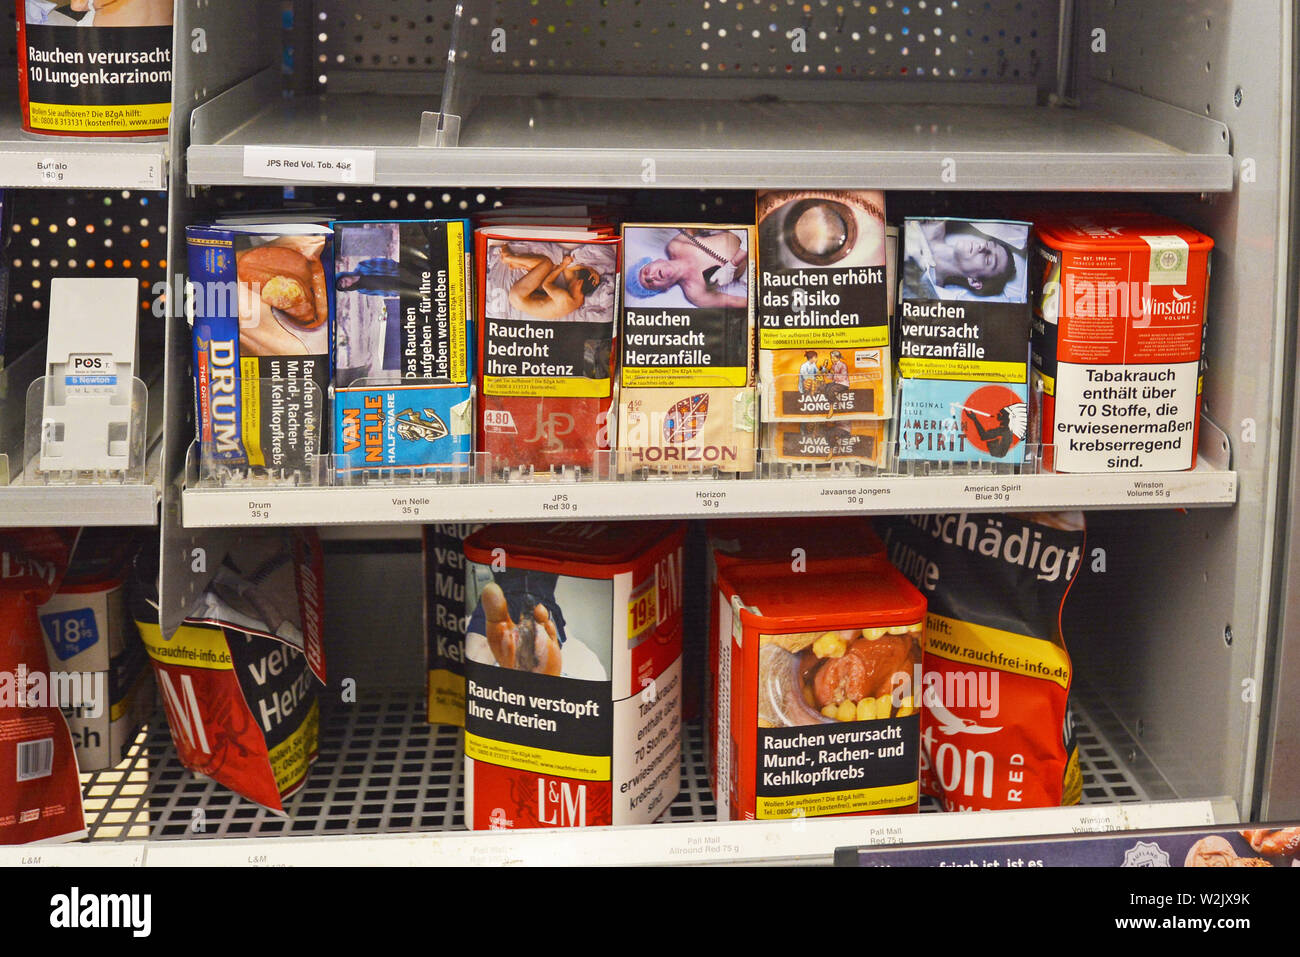 La tablette avec les packs du tabac pour rouler des cigarettes pour les étiquettes de mise en garde sur eux en allemand Banque D'Images